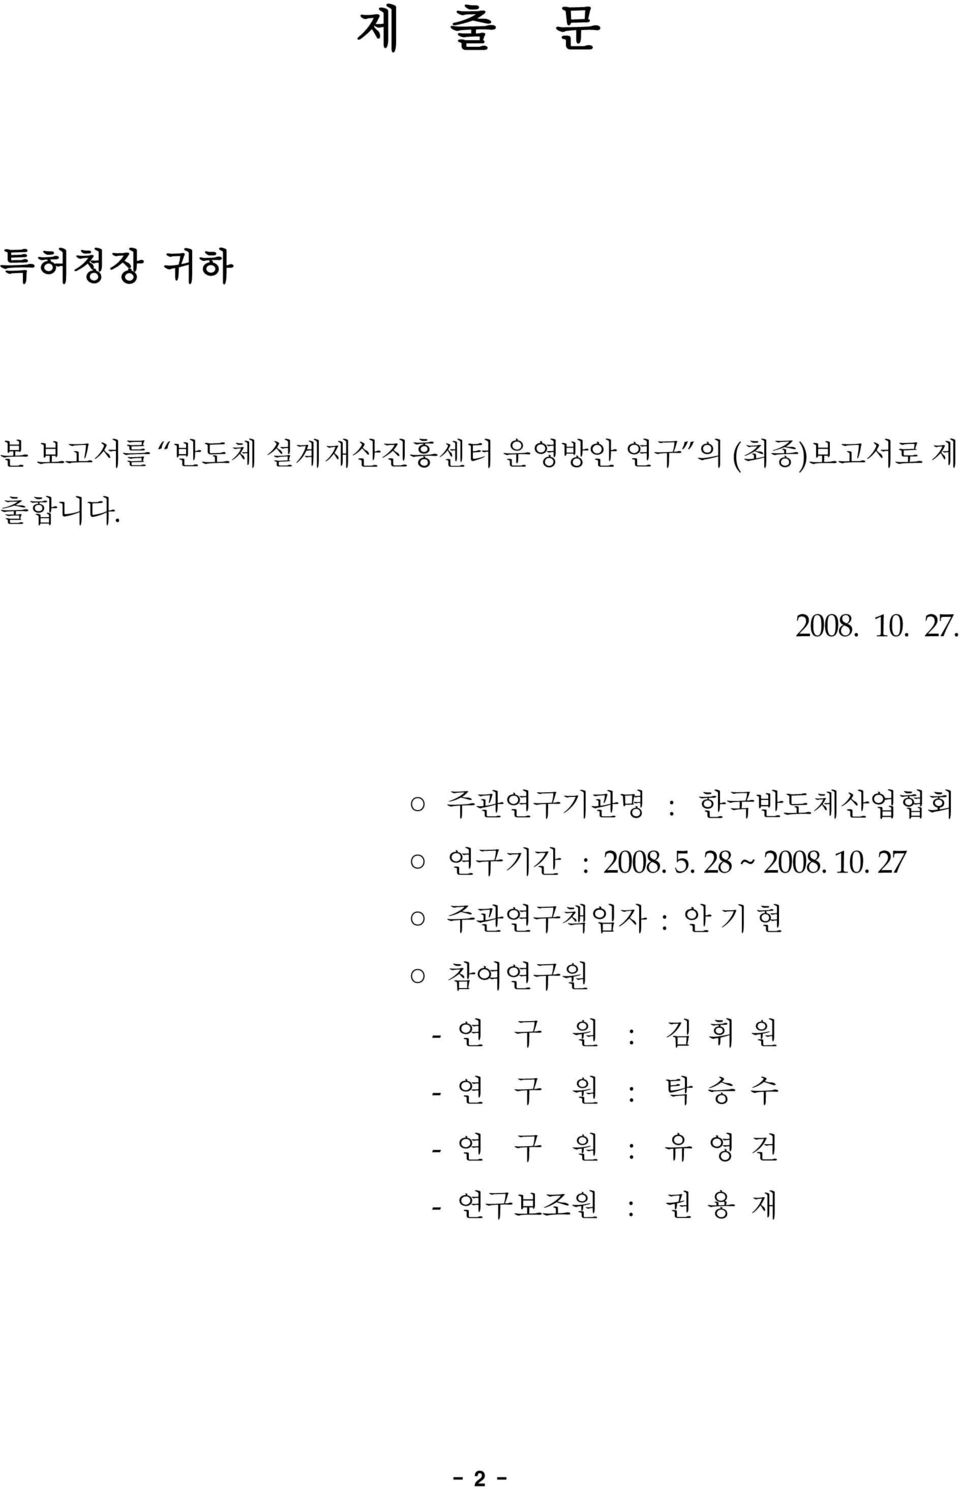 주관연구기관명 :한국반도체산업협회 연구기간 :2008.5.28~2008.10.